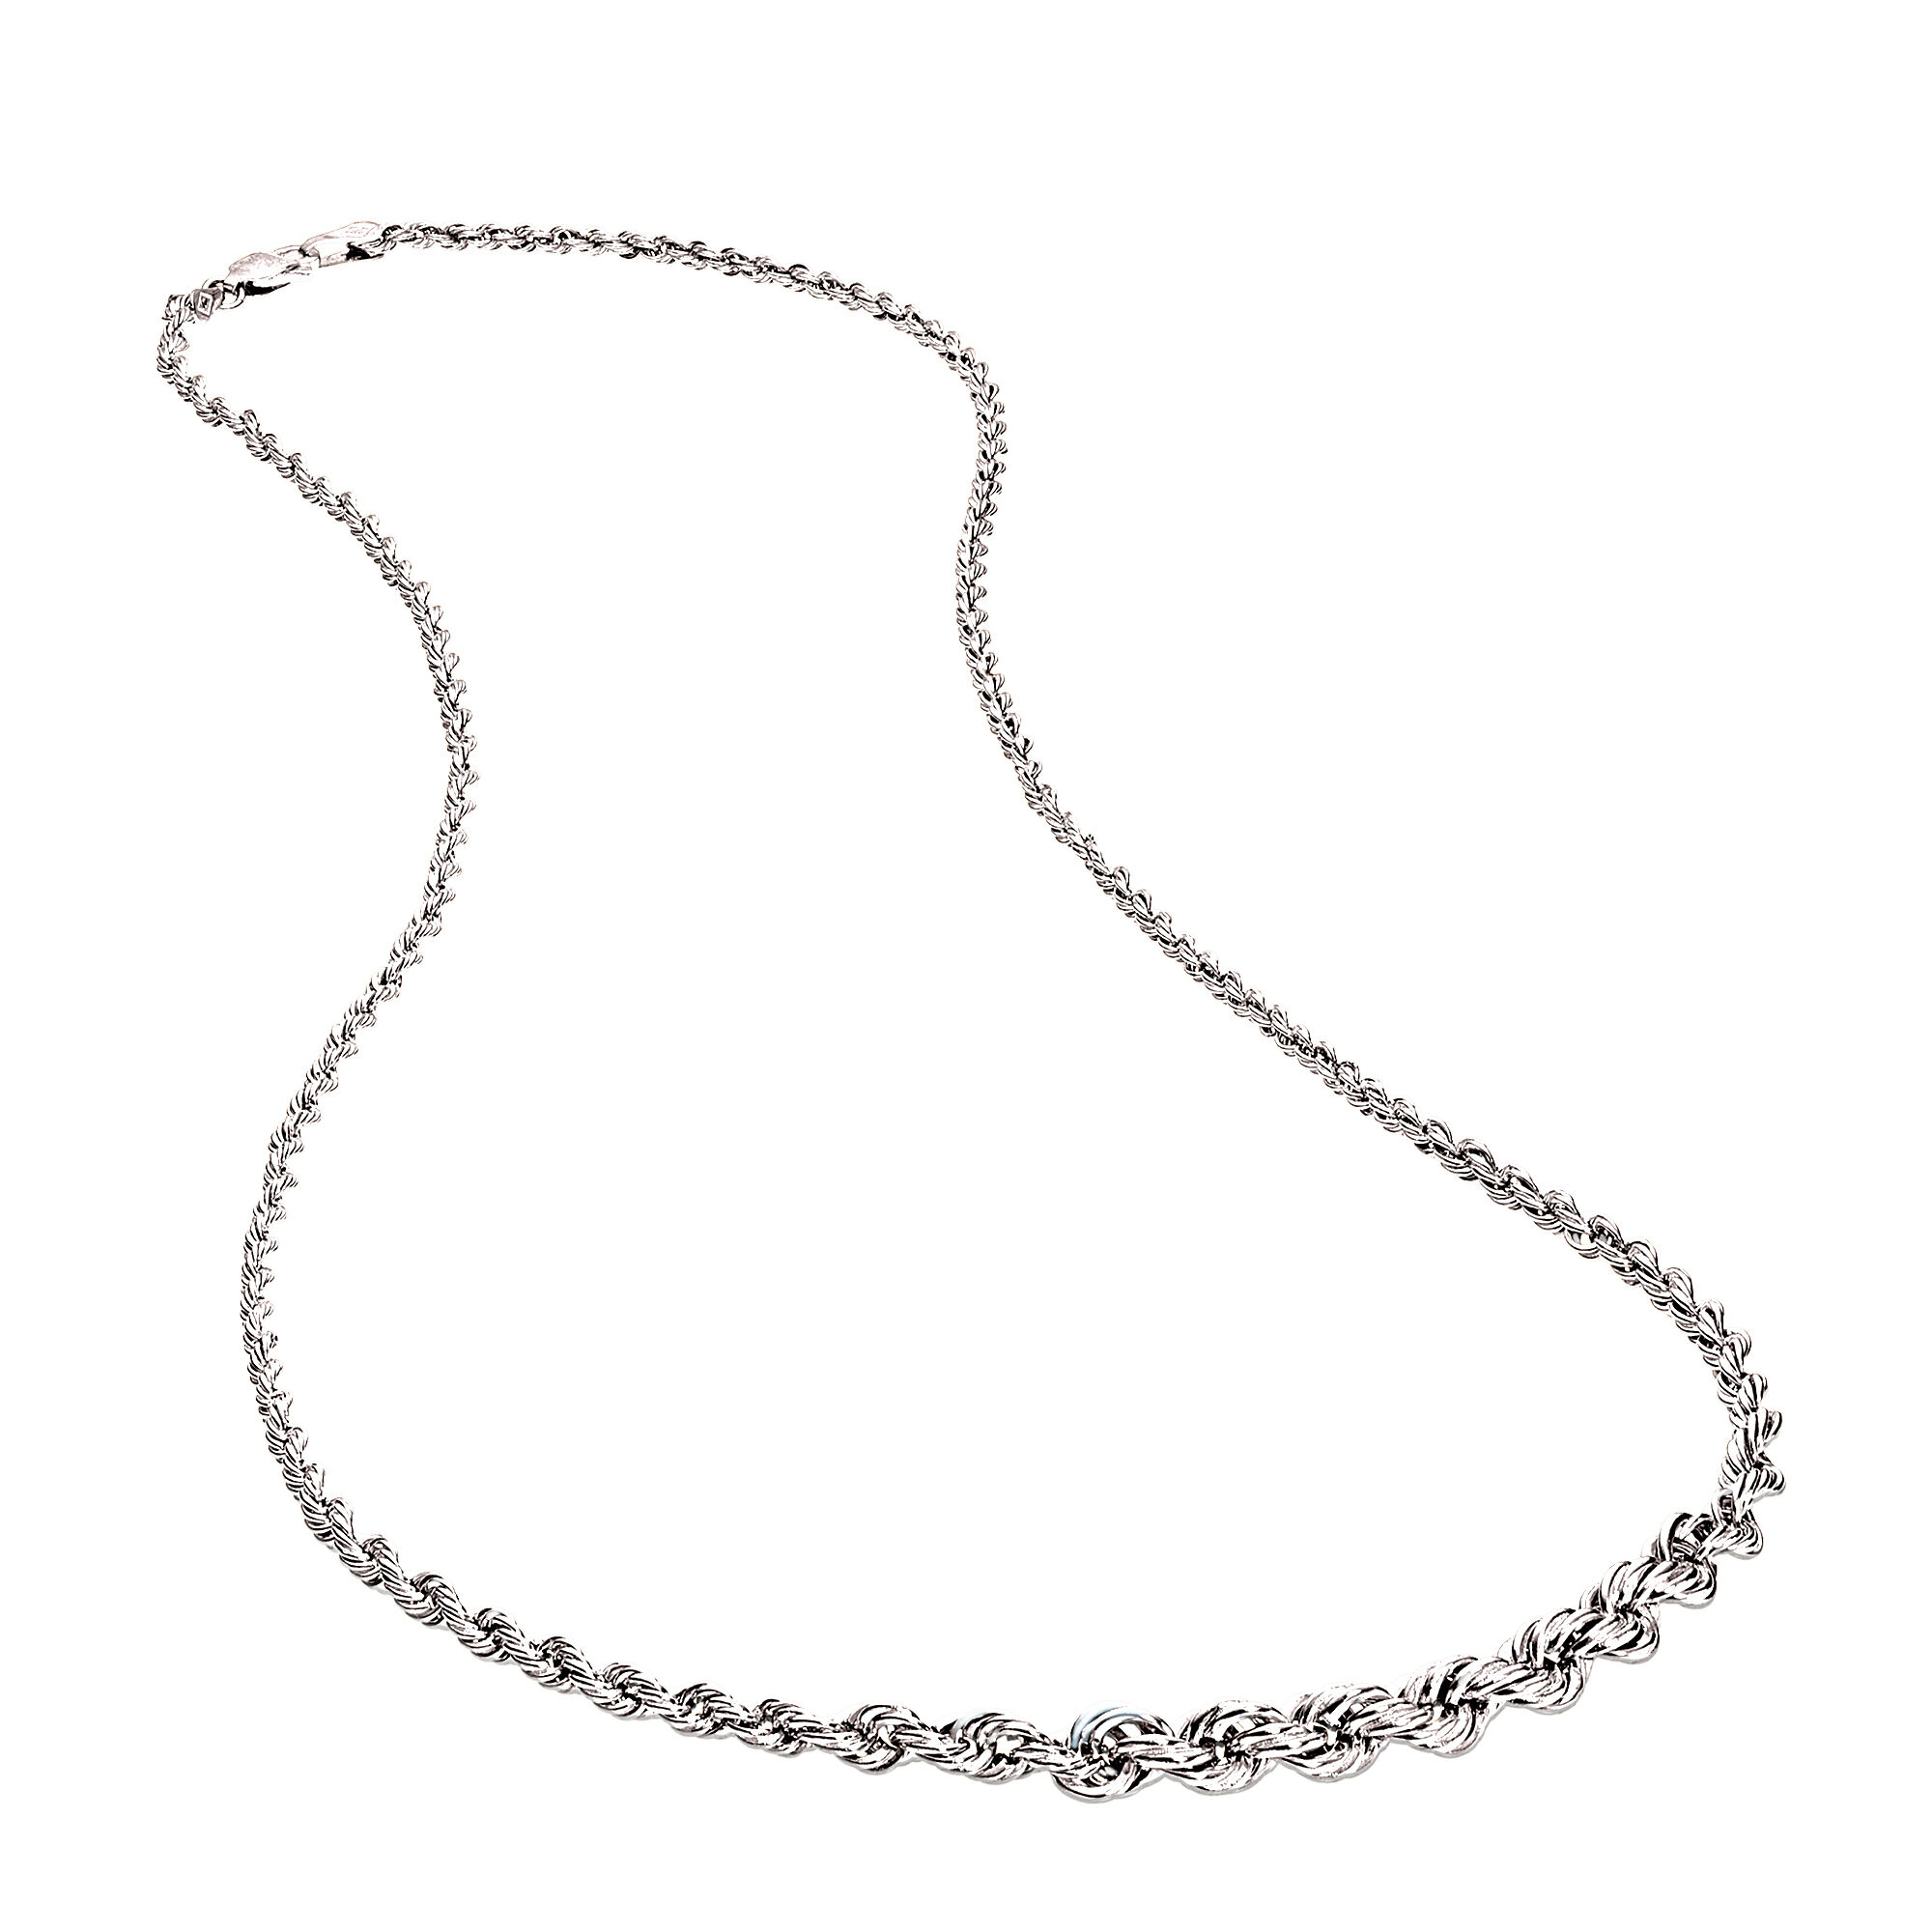 Elegant Simplicity Silver Necklace 11029 0012 b necklace